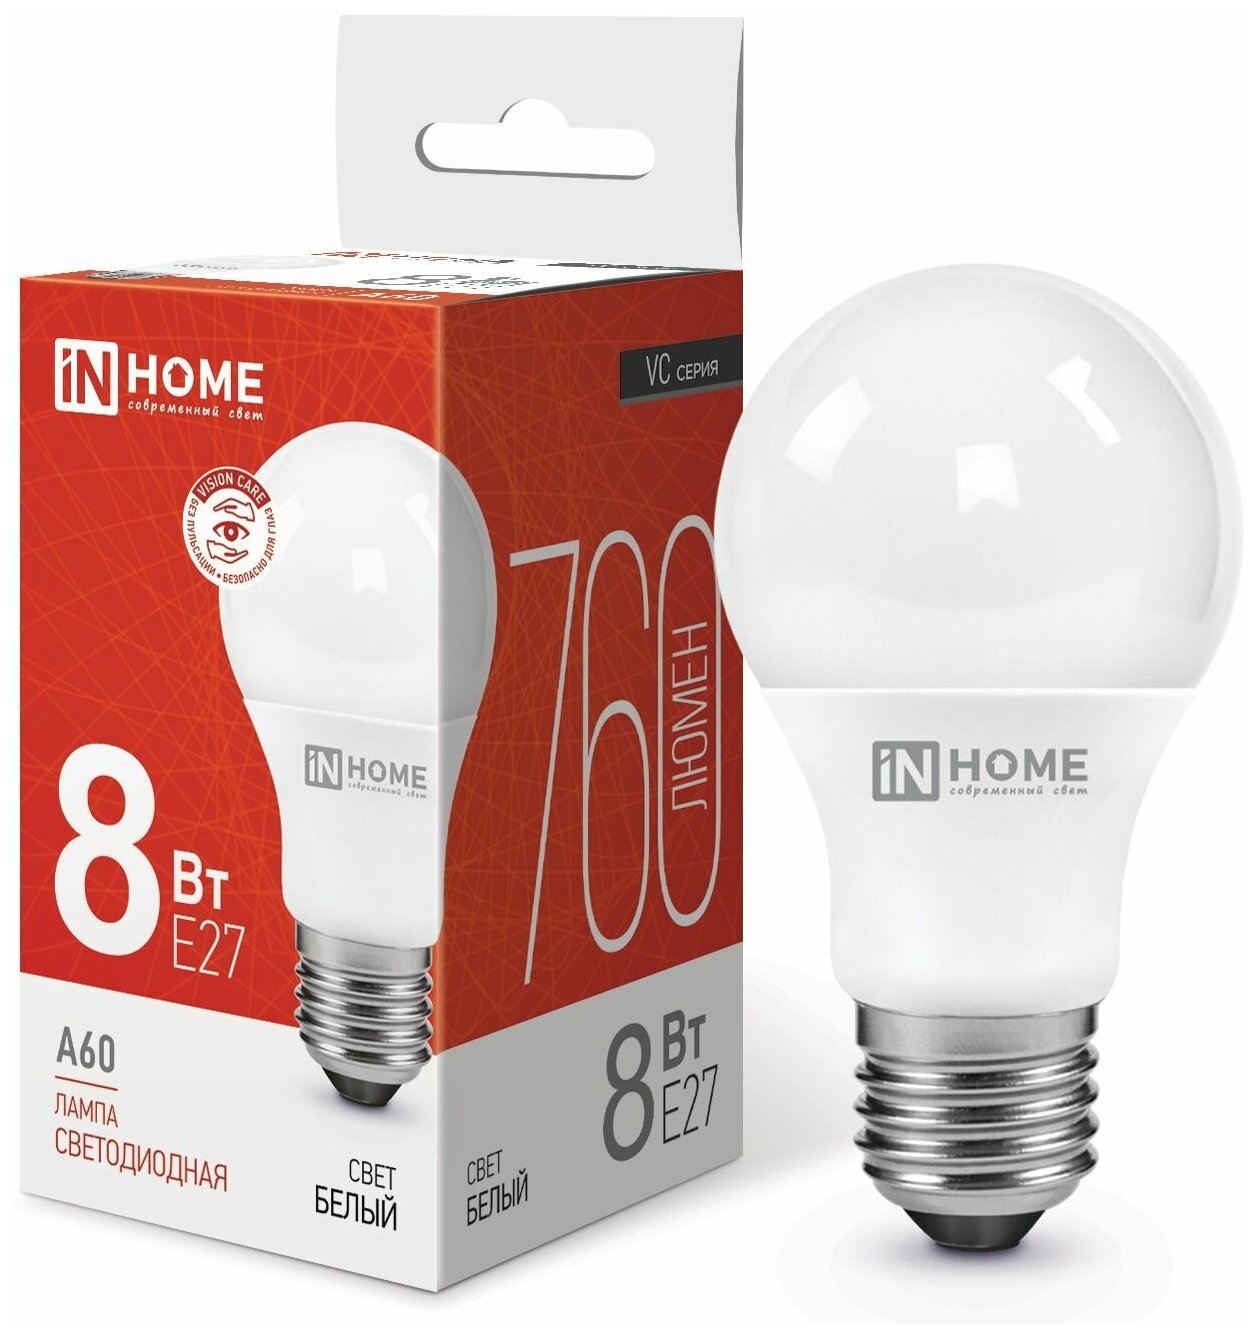 Упаковка ламп INHOME LED-A60-VC, 8Вт, 720lm, 30000ч, 4000К, E27, 10 шт. - фото №7